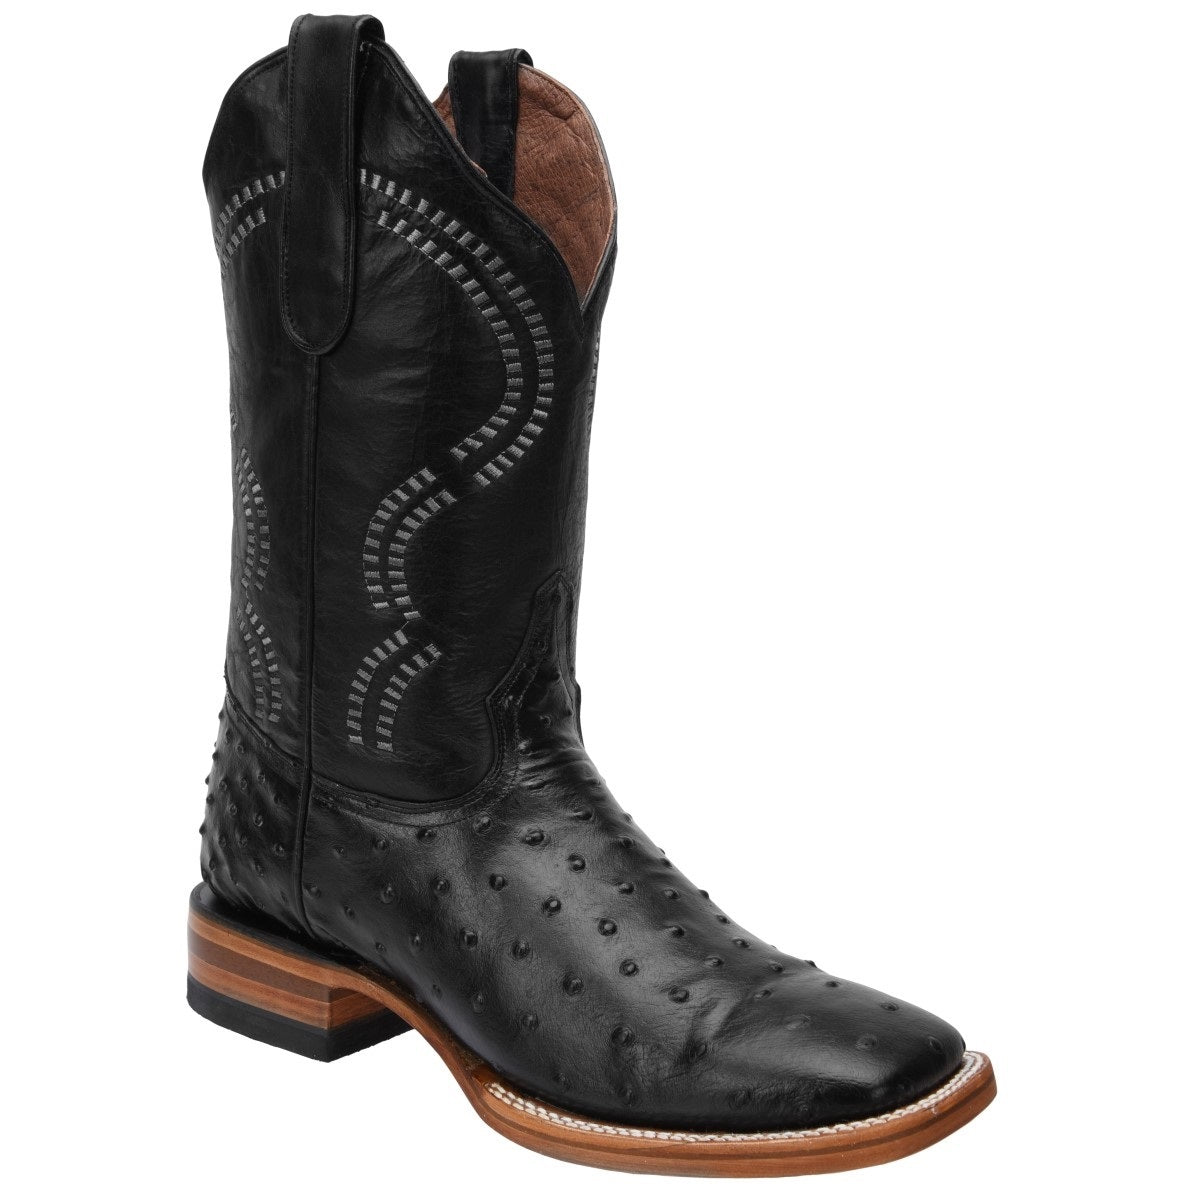 Botas Vaqueras TM-WD0364 - Western Boots